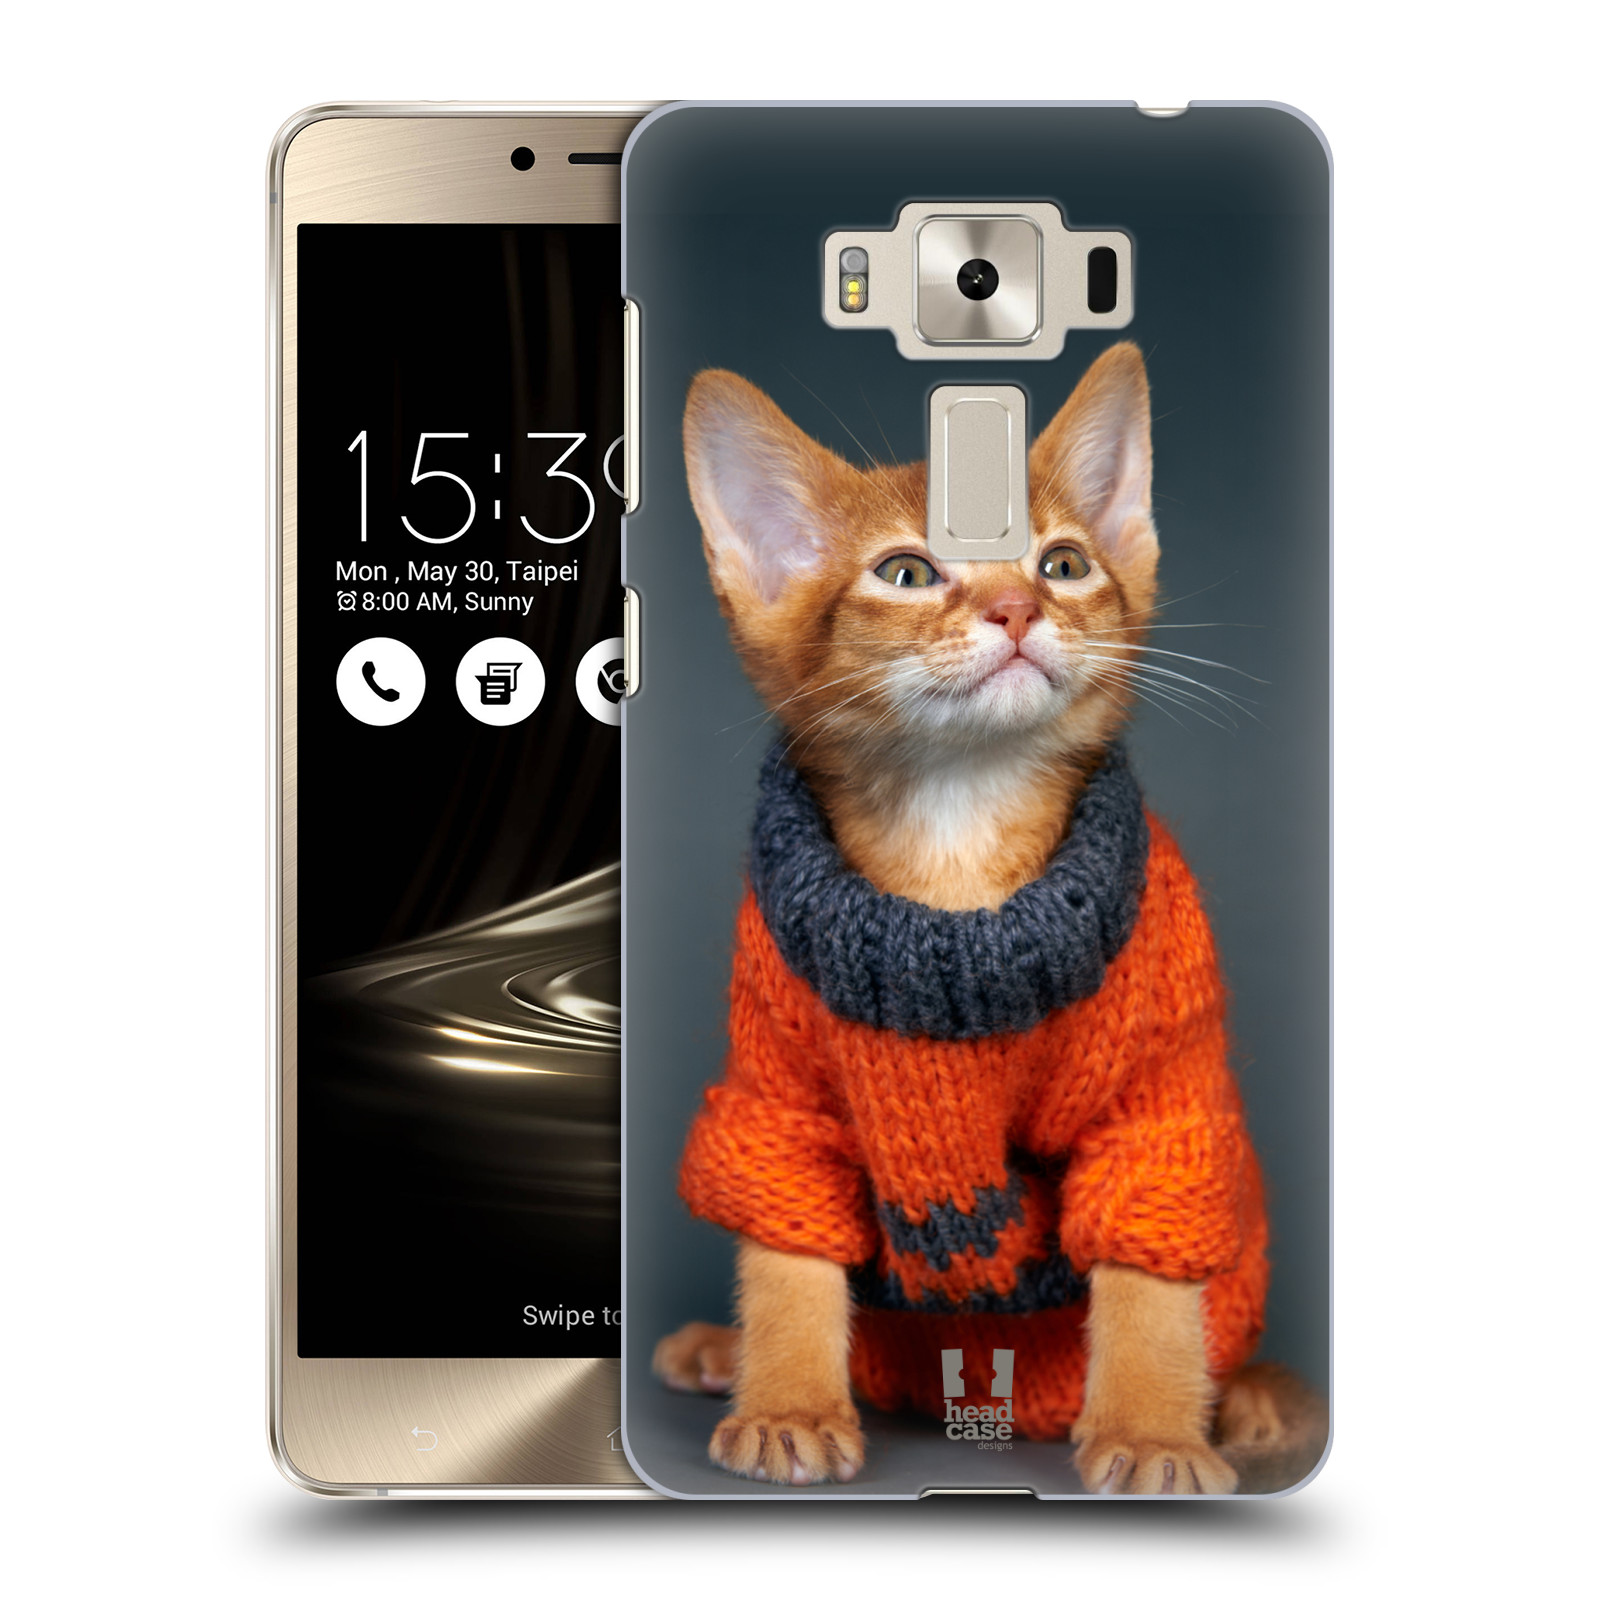 HEAD CASE plastový obal na mobil Asus Zenfone 3 DELUXE ZS550KL vzor Legrační zvířátka kočička v oranžovém svetru